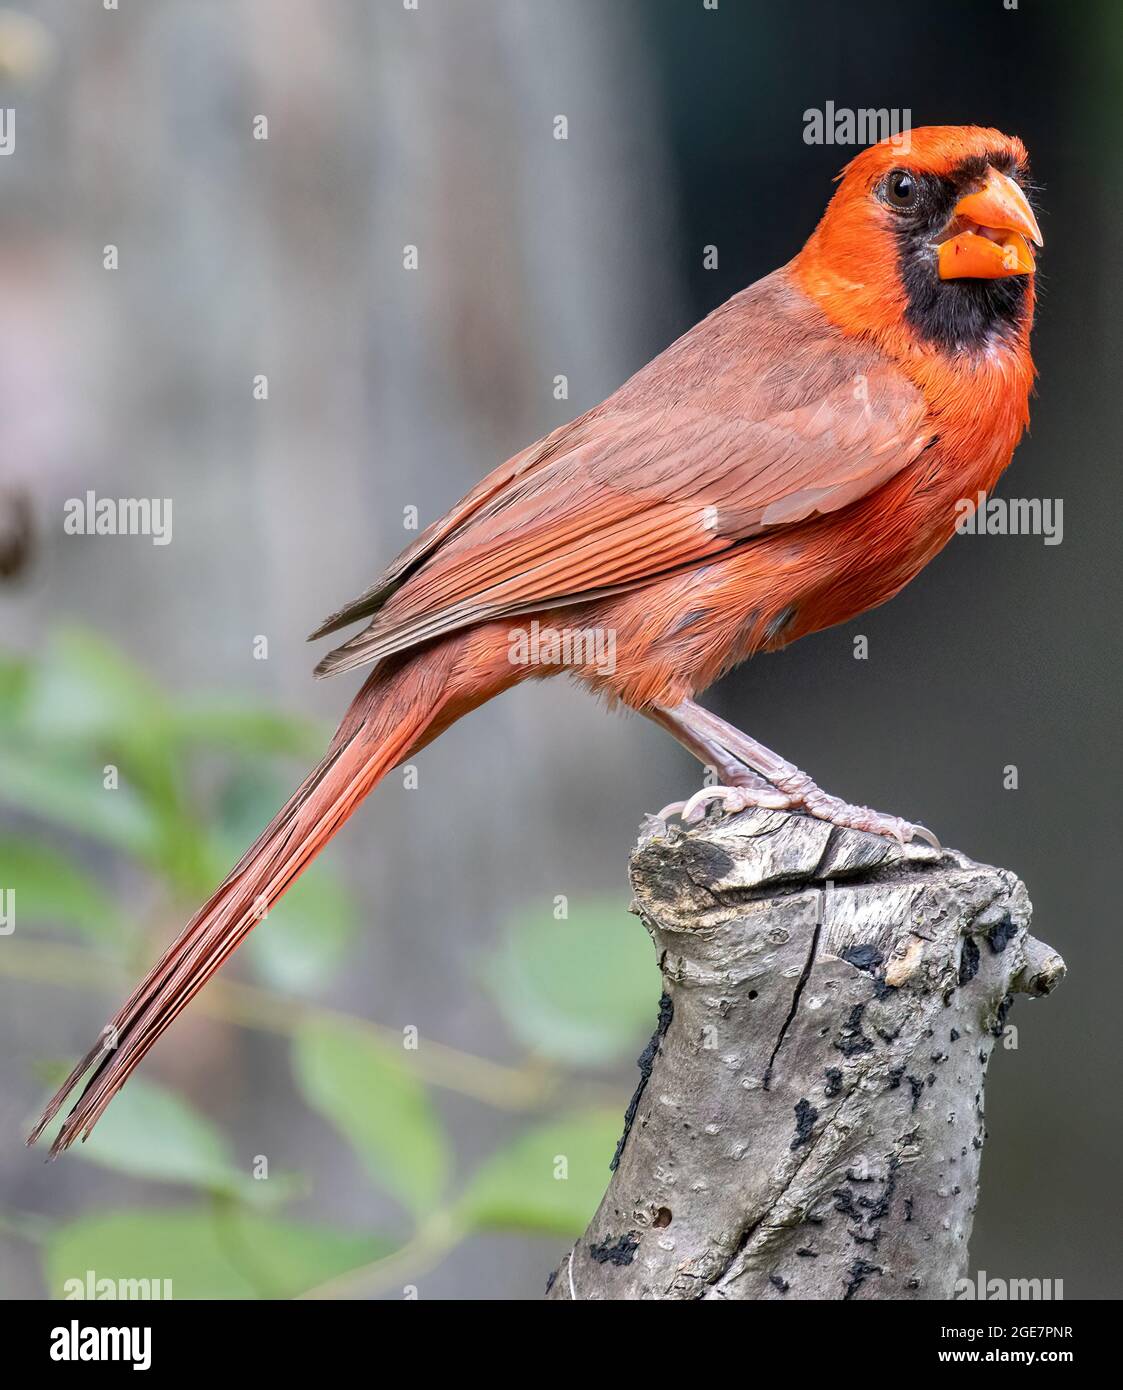 Männchen Northern Cardinalis cardinalis perced auf Stumpf Seitenansicht Blick in Richtung Kamera Stockfoto